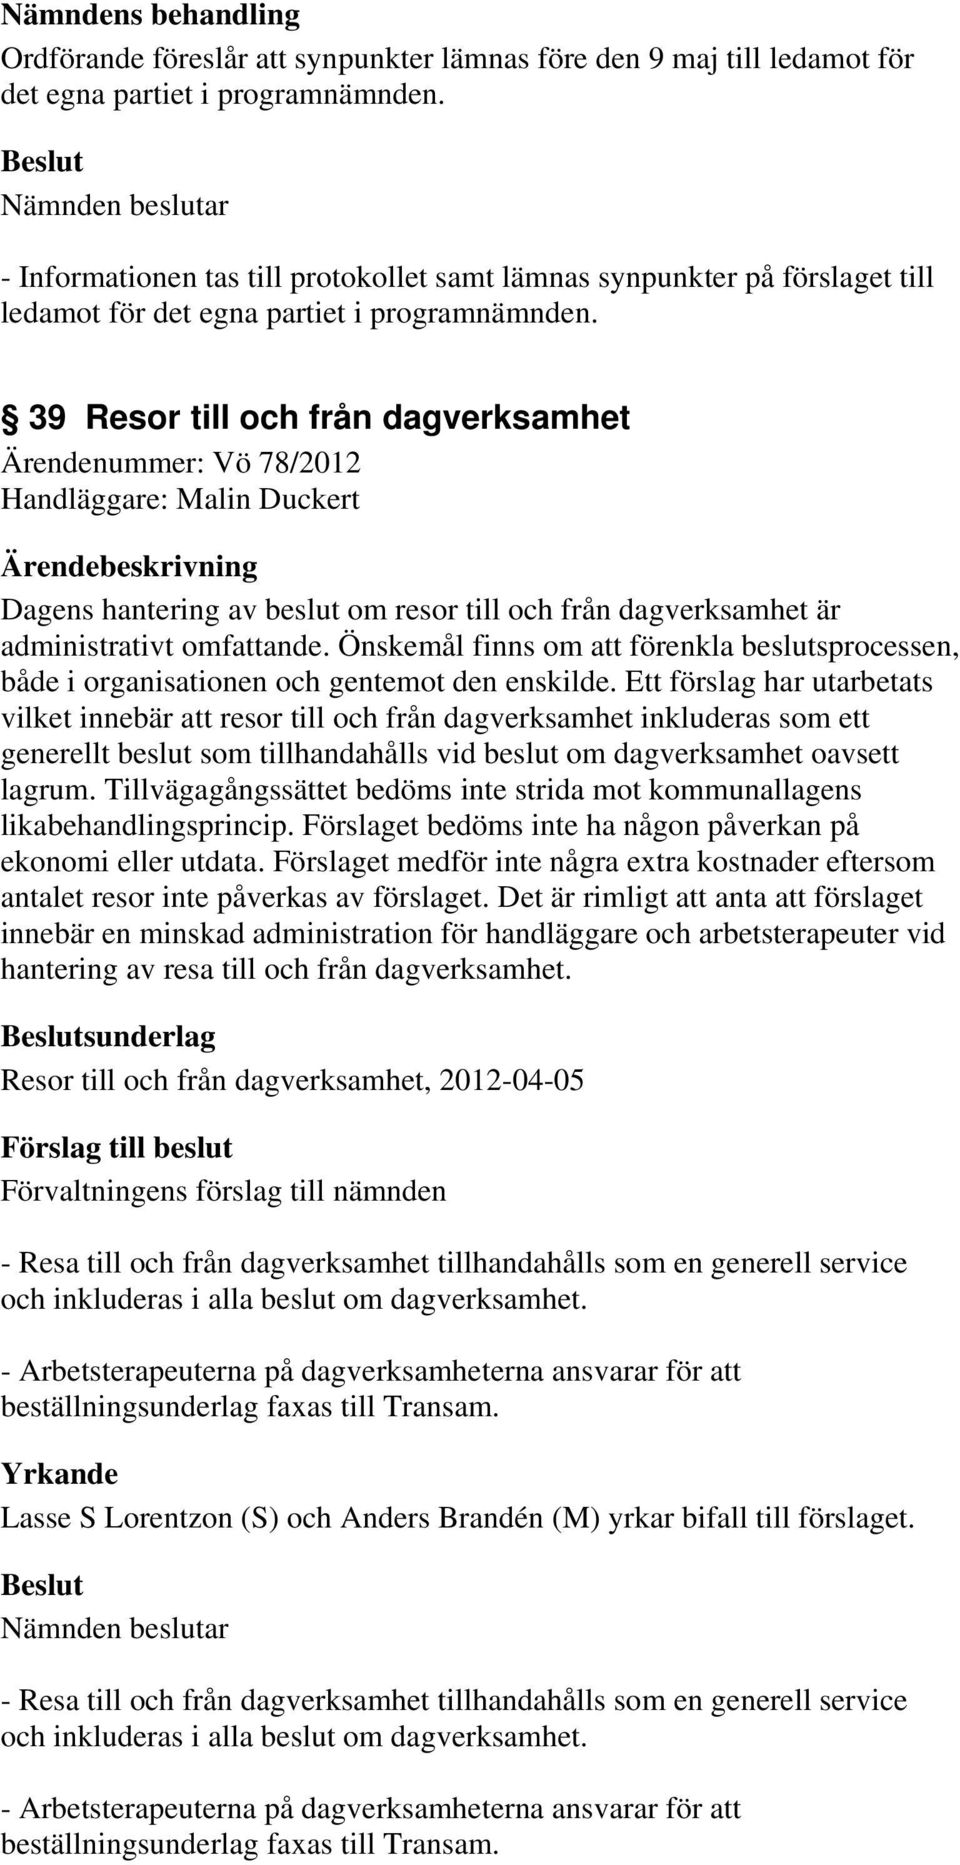 39 Resor till och från dagverksamhet Ärendenummer: Vö 78/2012 Handläggare: Malin Duckert Dagens hantering av beslut om resor till och från dagverksamhet är administrativt omfattande.